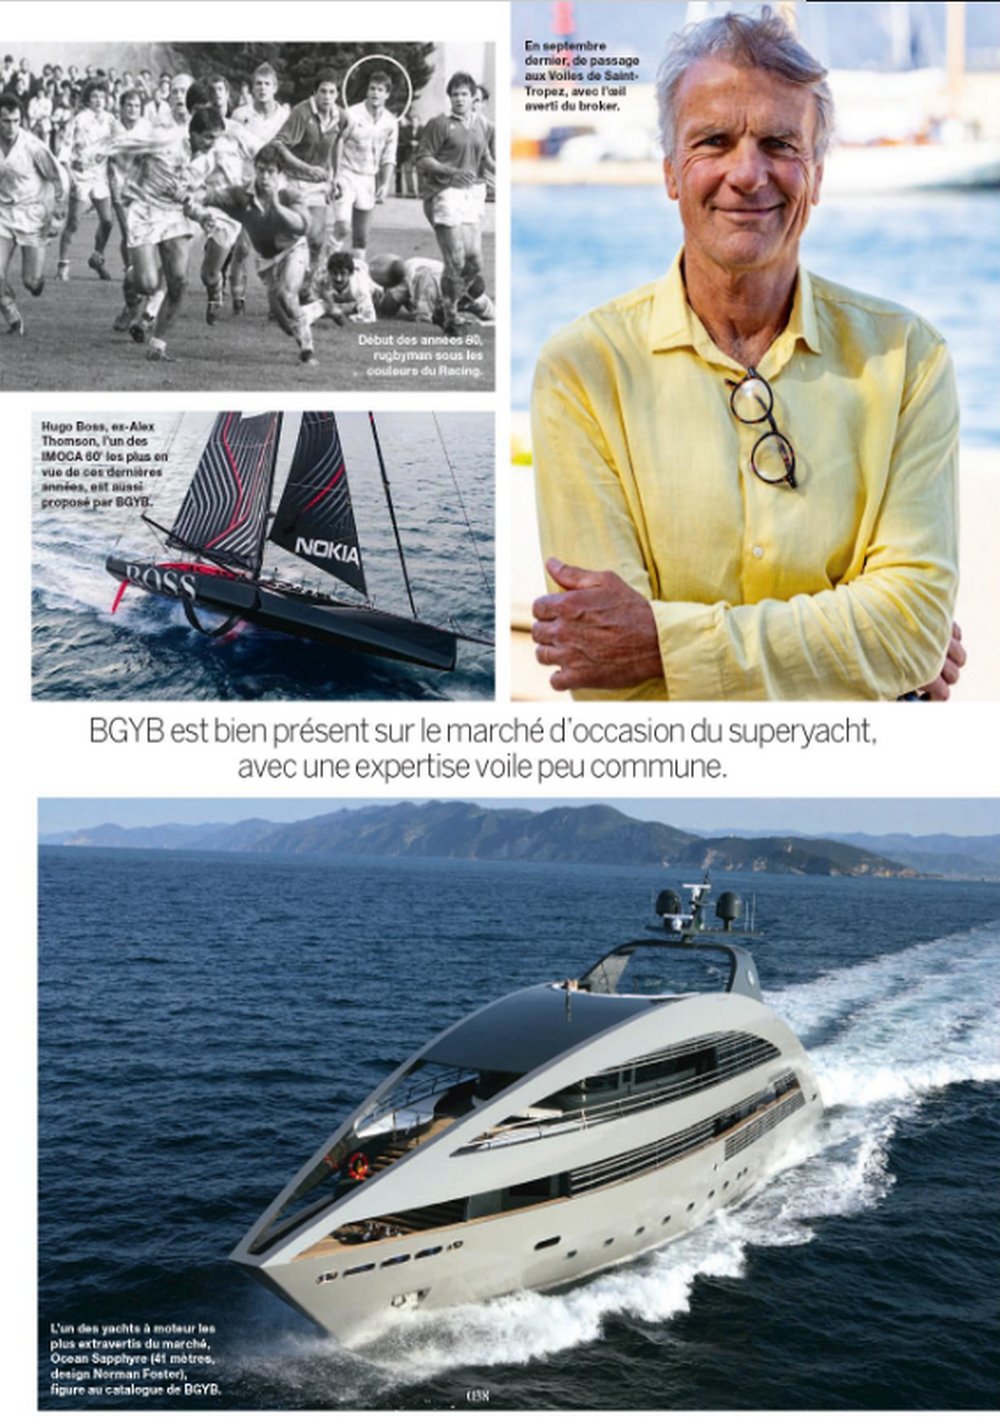 Le Magazine Boat Heroes présente le parcours  atypique de Bernard Gallay, fondateur de BGYB